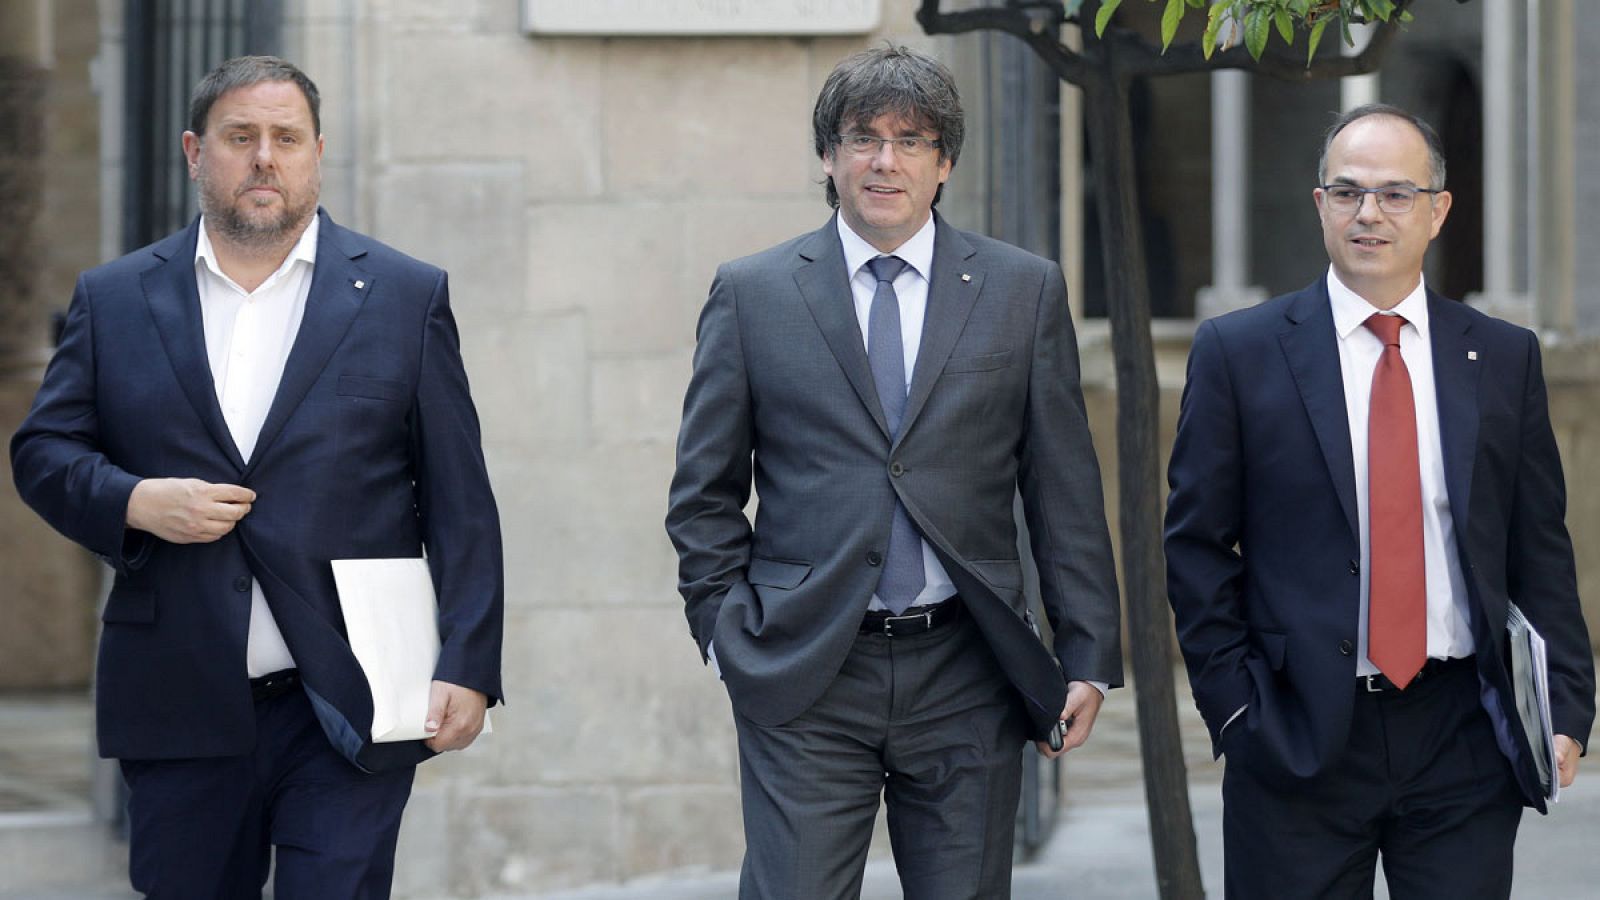 Carles Puigdemont, Oriol Junqueras y Jordi Turull entre los 14 exmiembros del Govern procesados